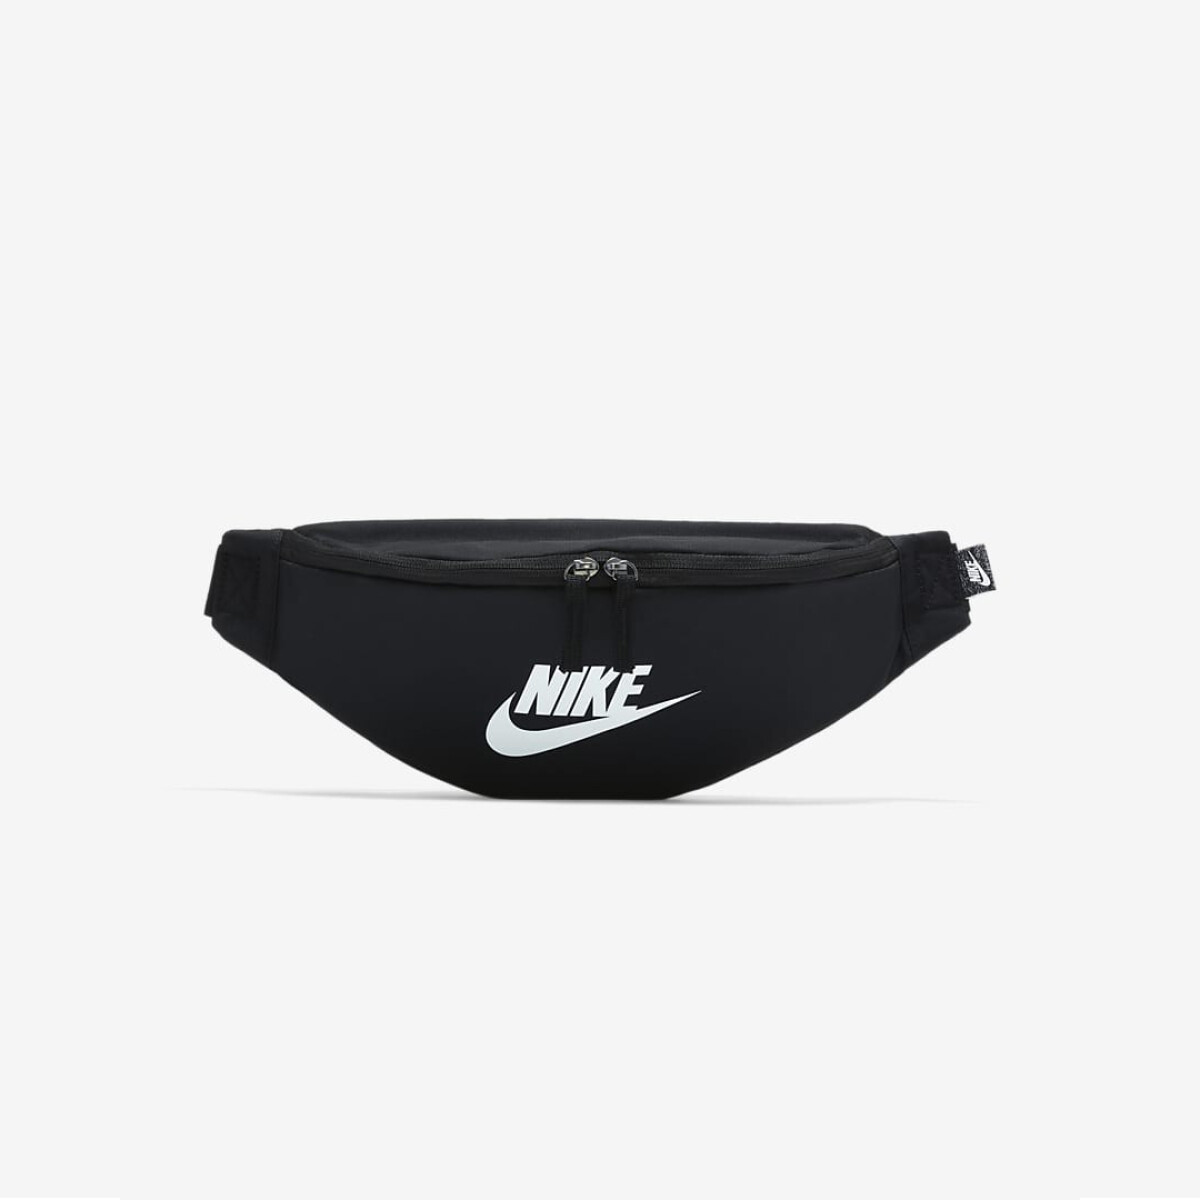 Riñonera Nike Moda Unisex Heritage Waistpack - - S/C 